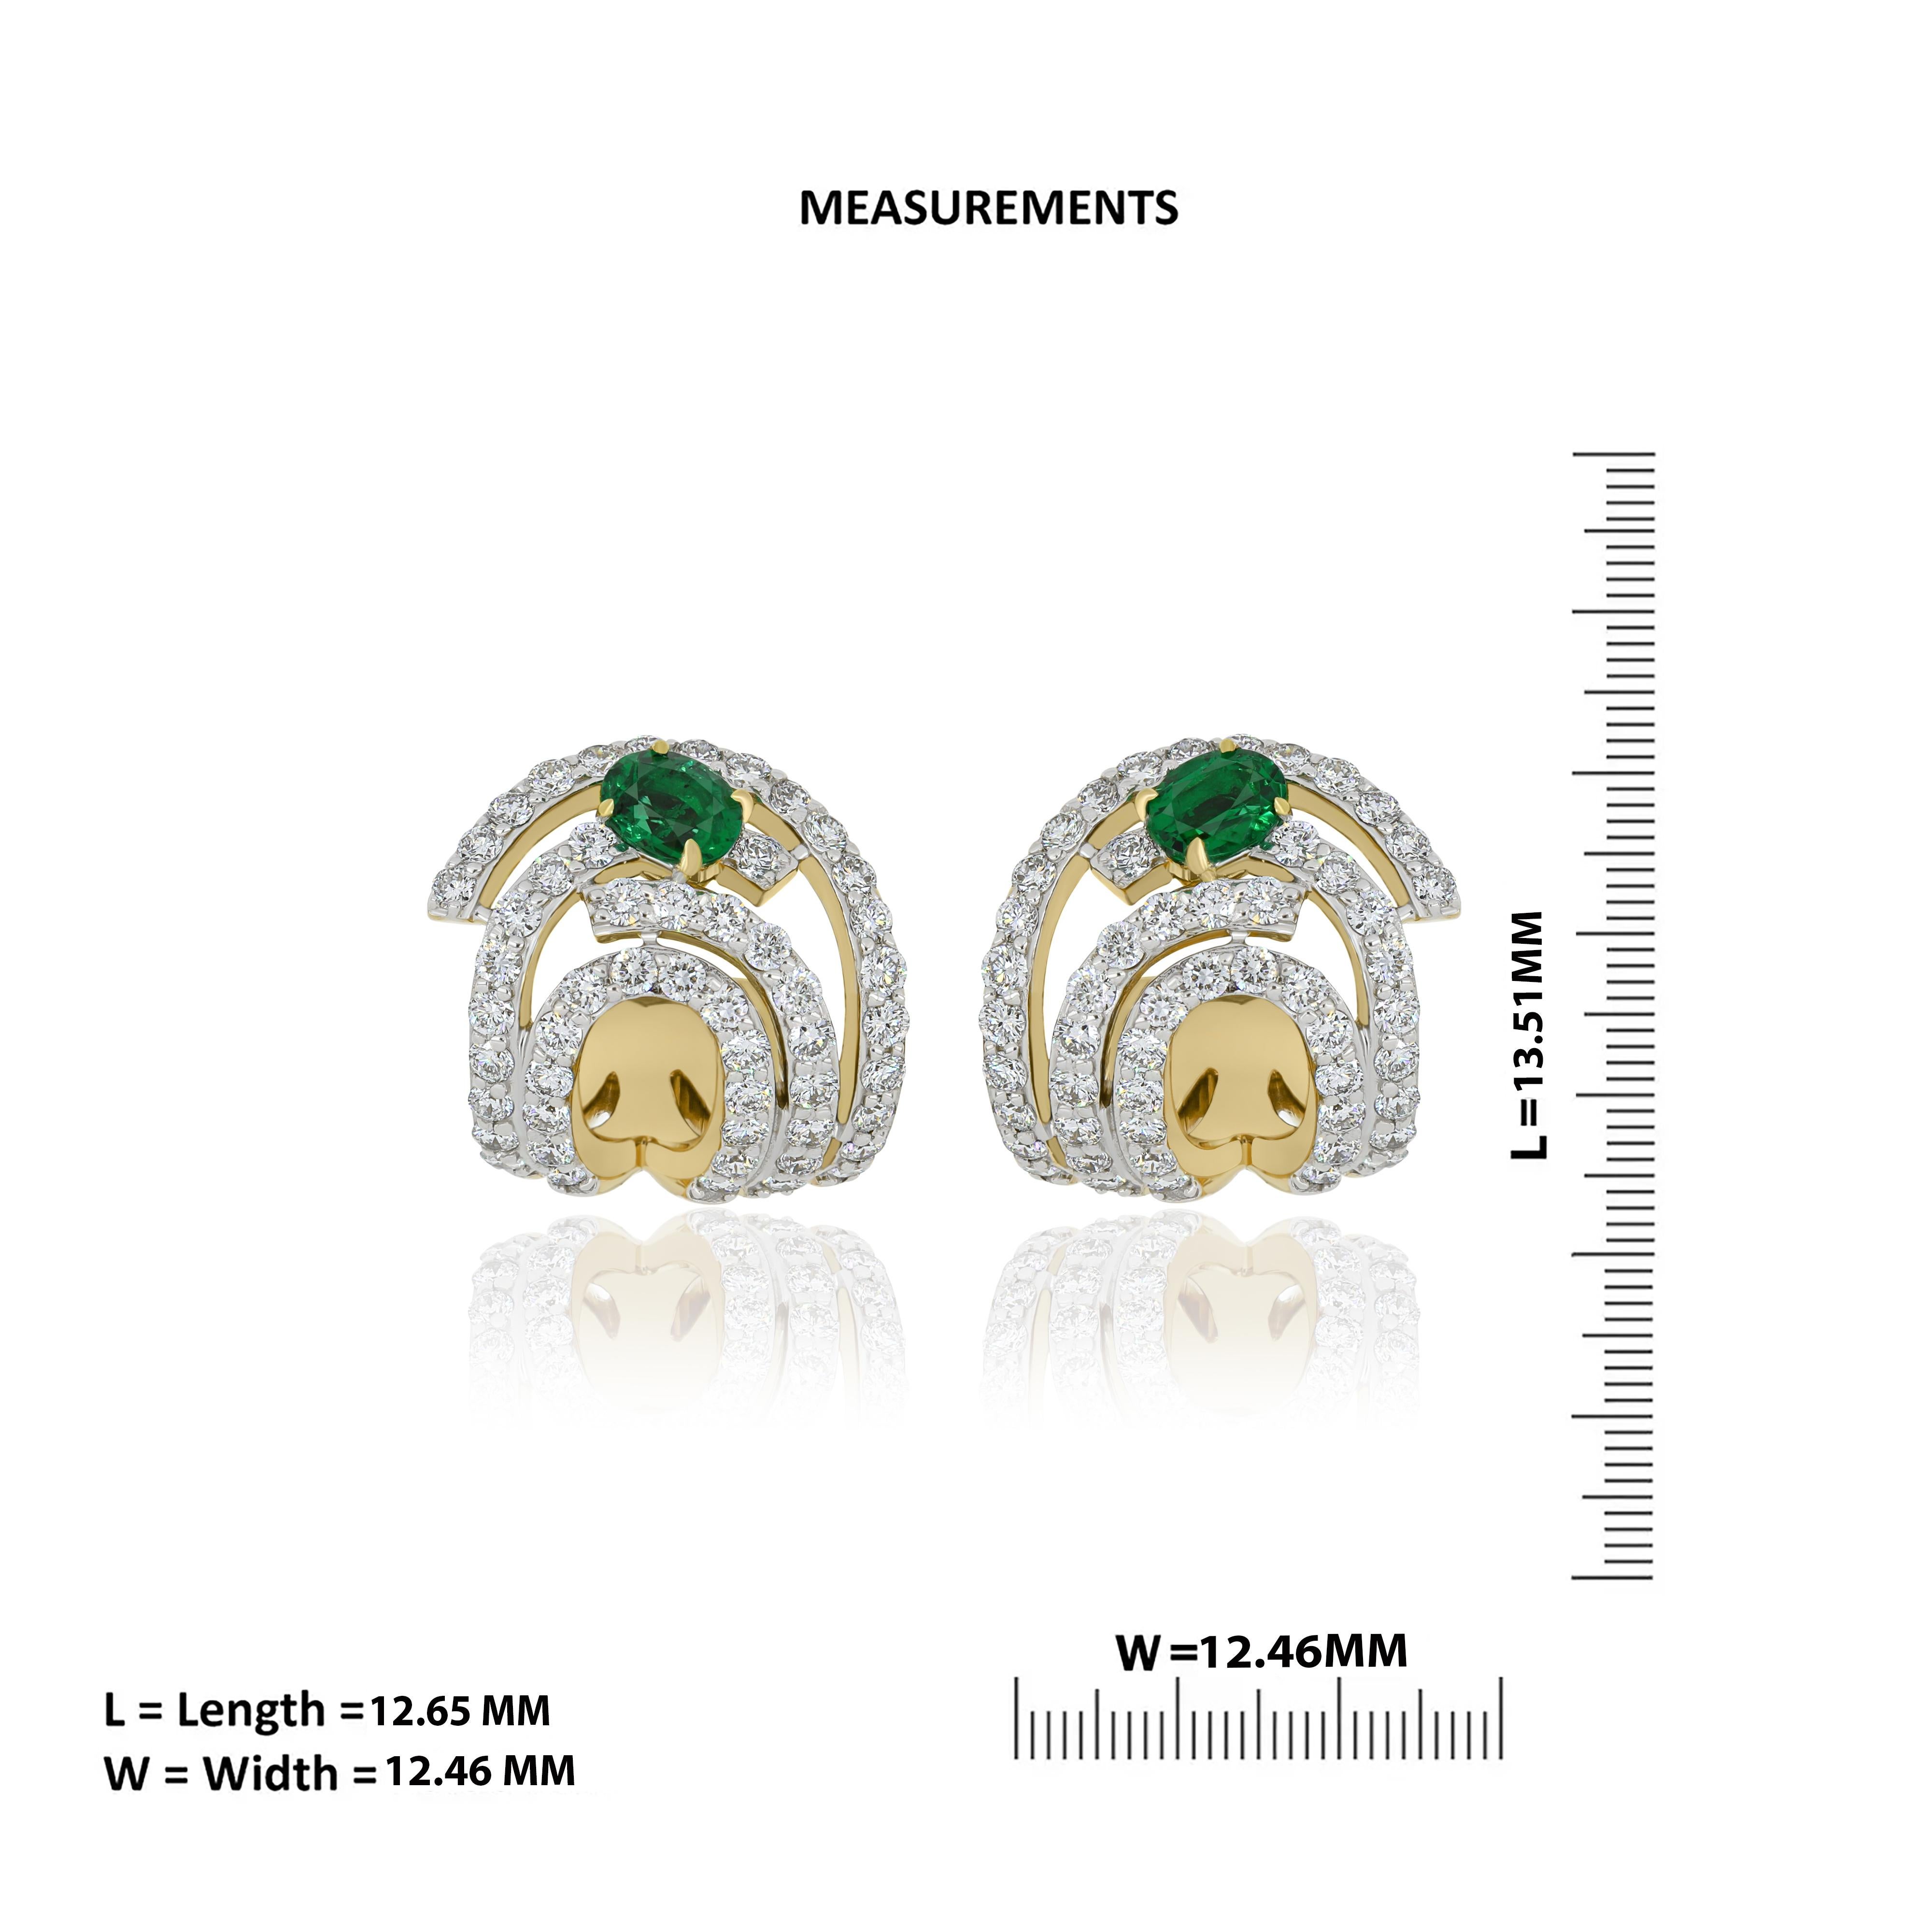 Oval Cut Emerald & Diamond Studded Earrings in 18K Yellow Gold jewelry, handcraft Earring For Sale